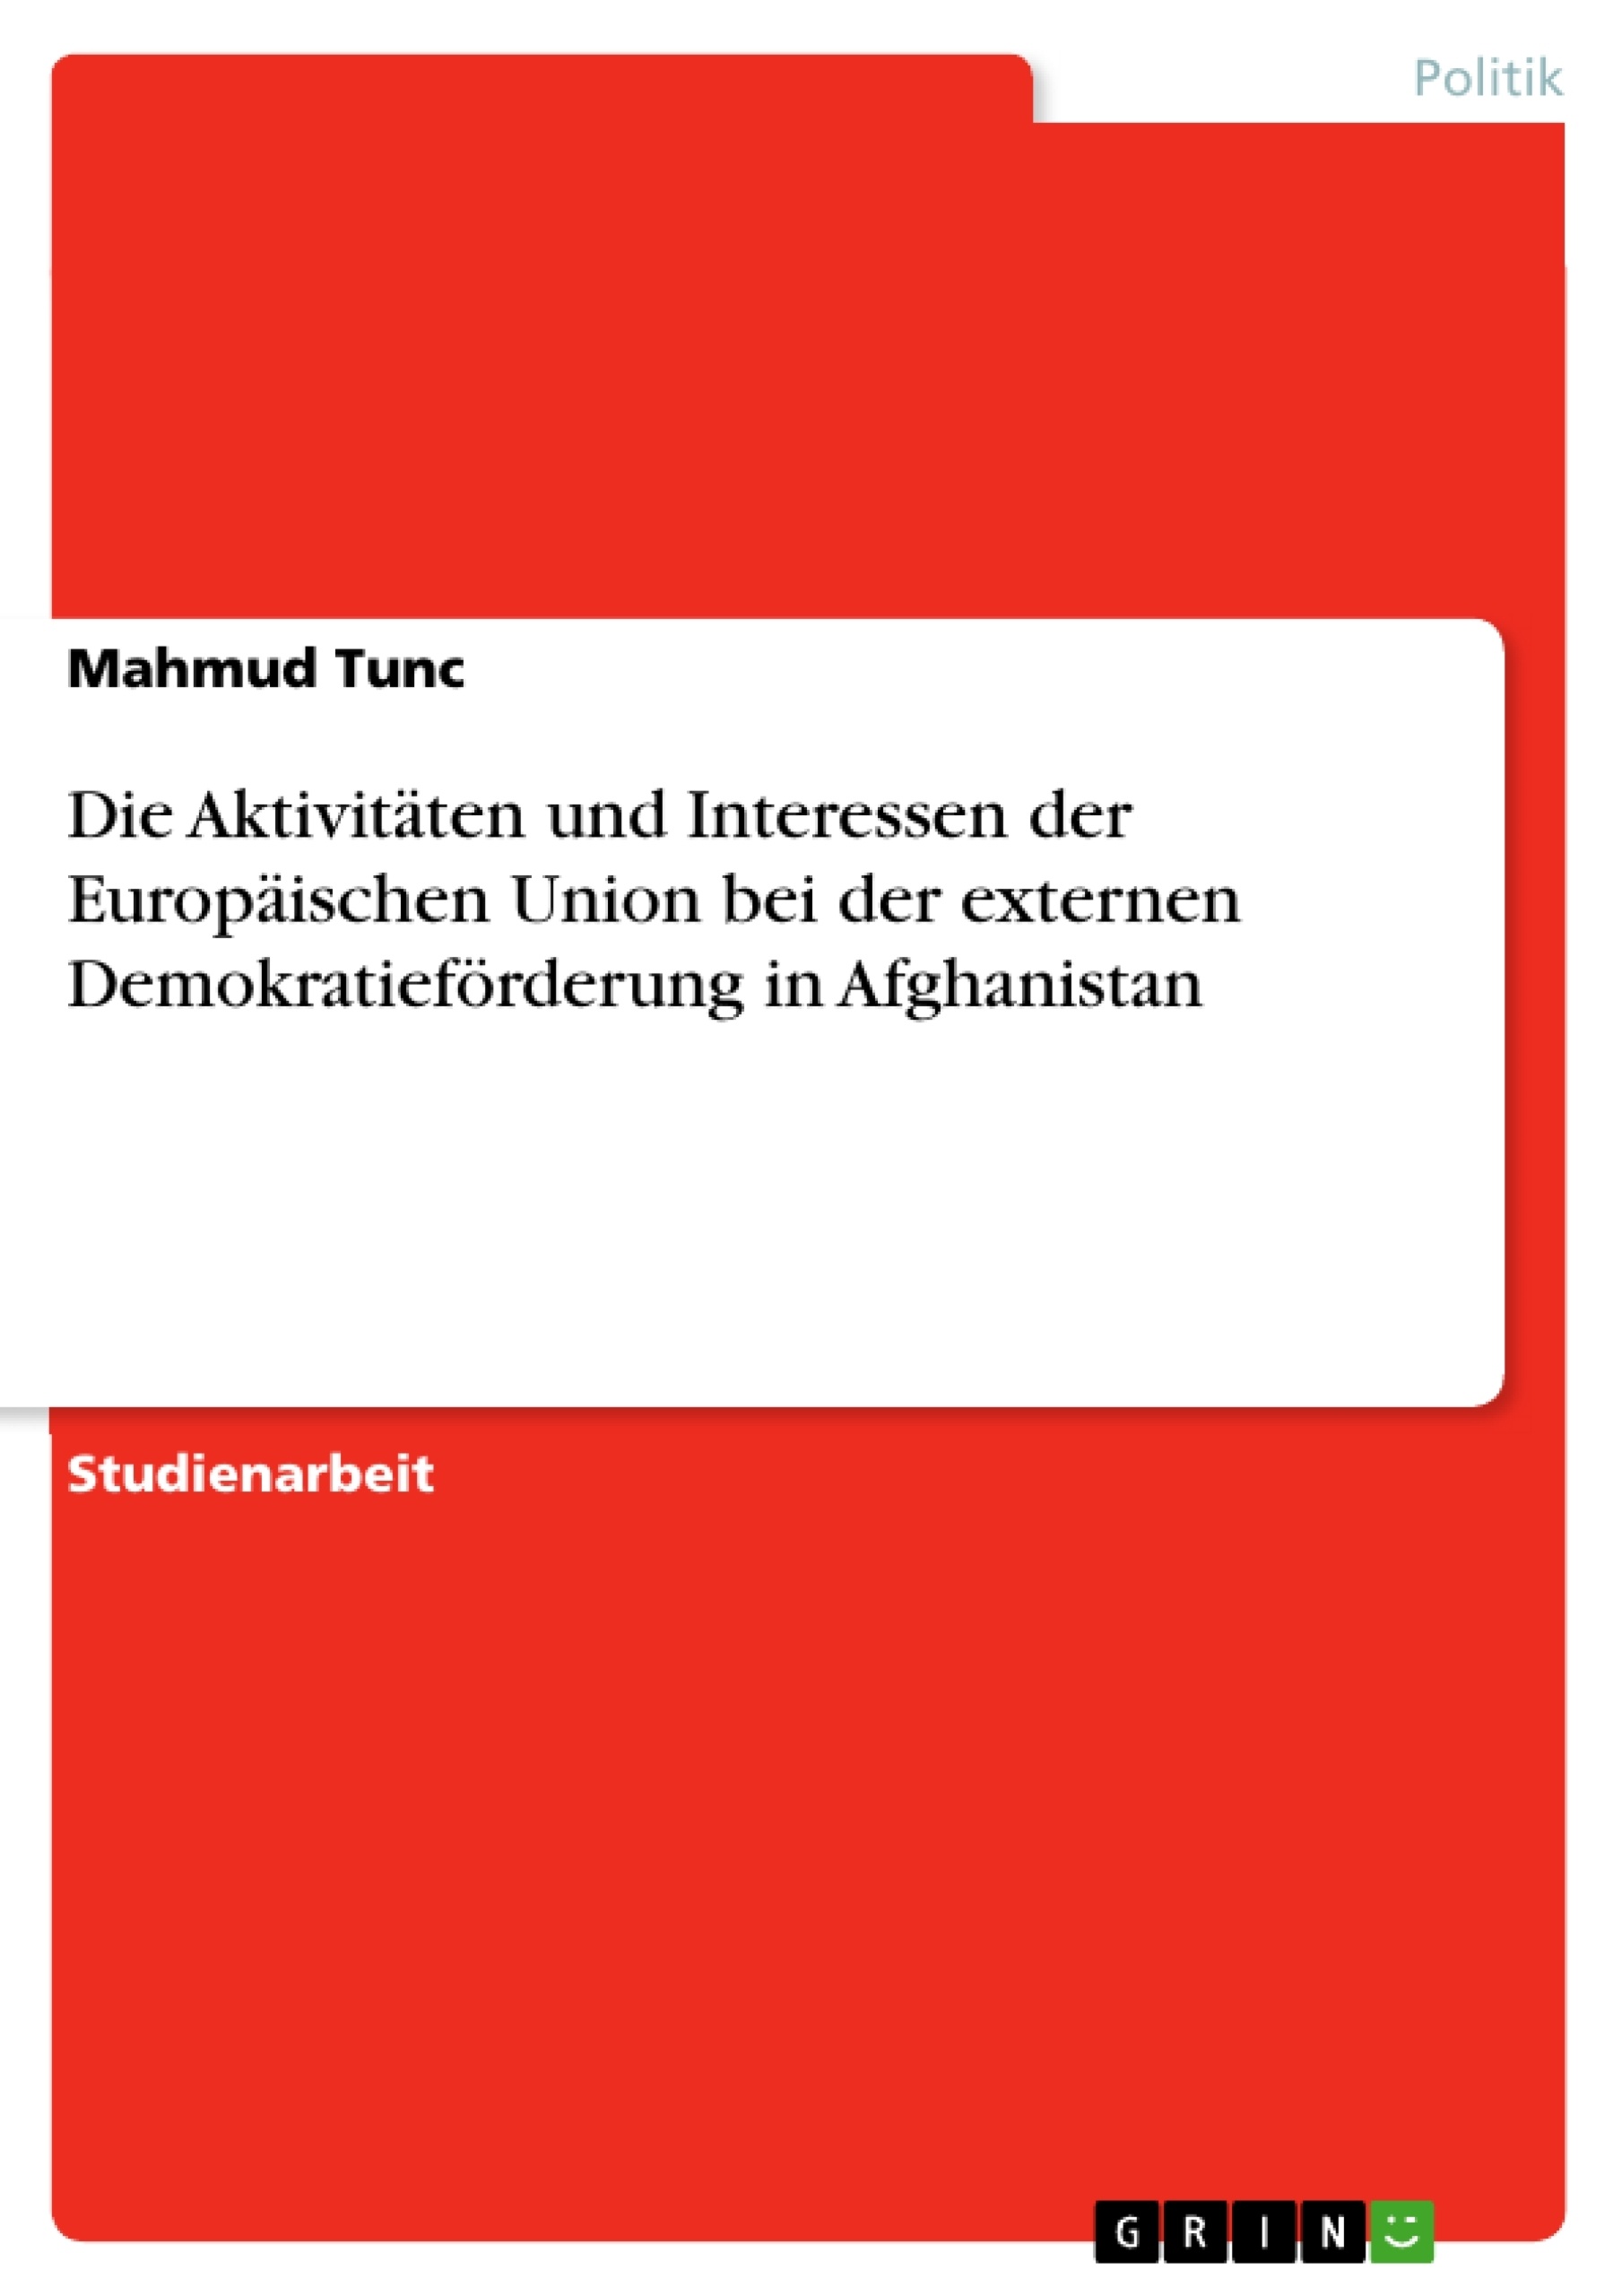 Titre: Die Aktivitäten und Interessen der Europäischen Union bei der externen Demokratieförderung in Afghanistan